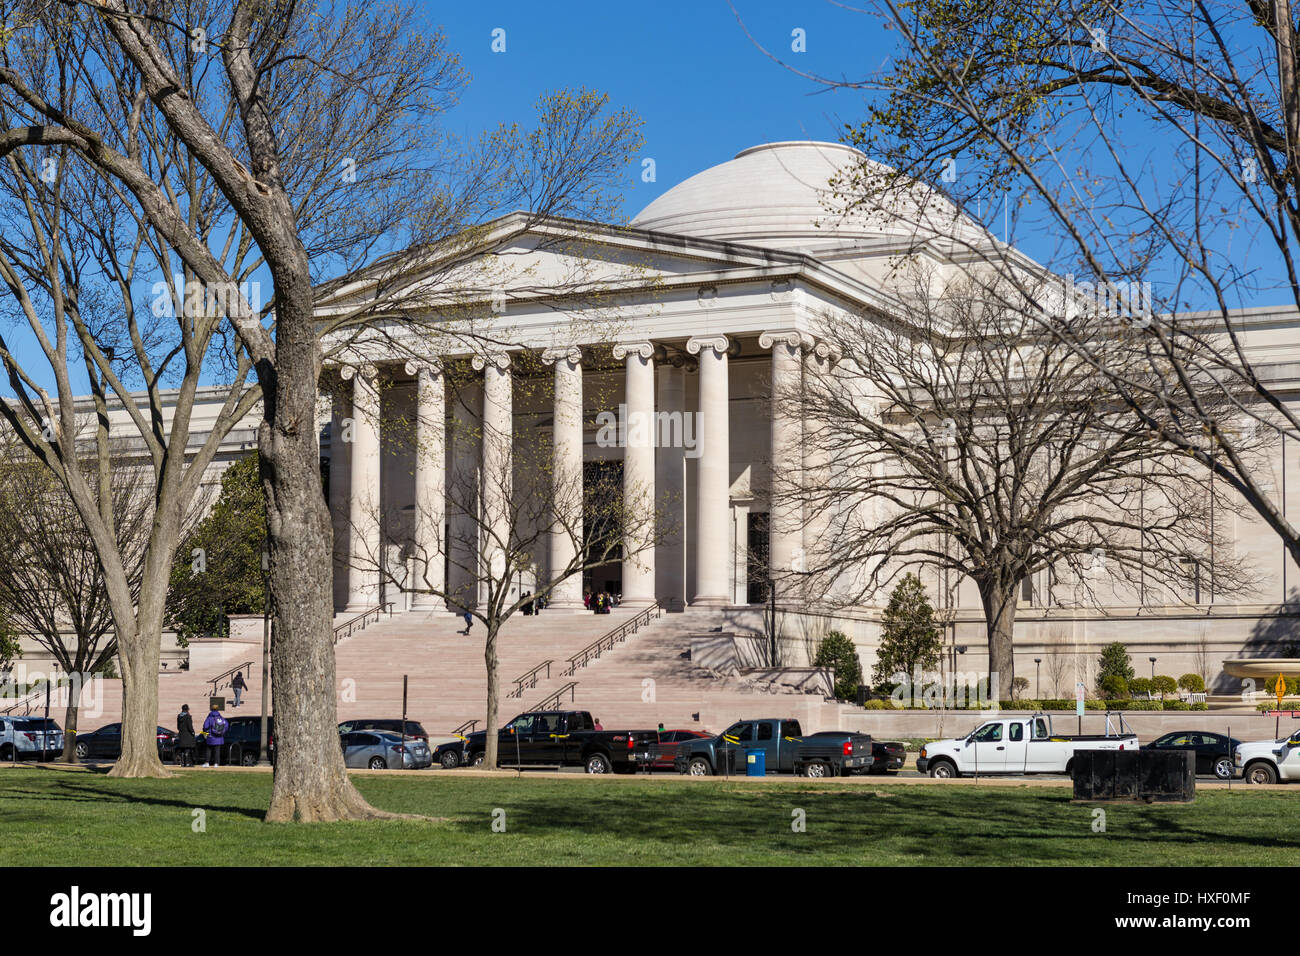 Une vue de l'édifice néo-classique à l'ouest de la National Gallery of Art sur le National Mall à Washington, DC. Banque D'Images